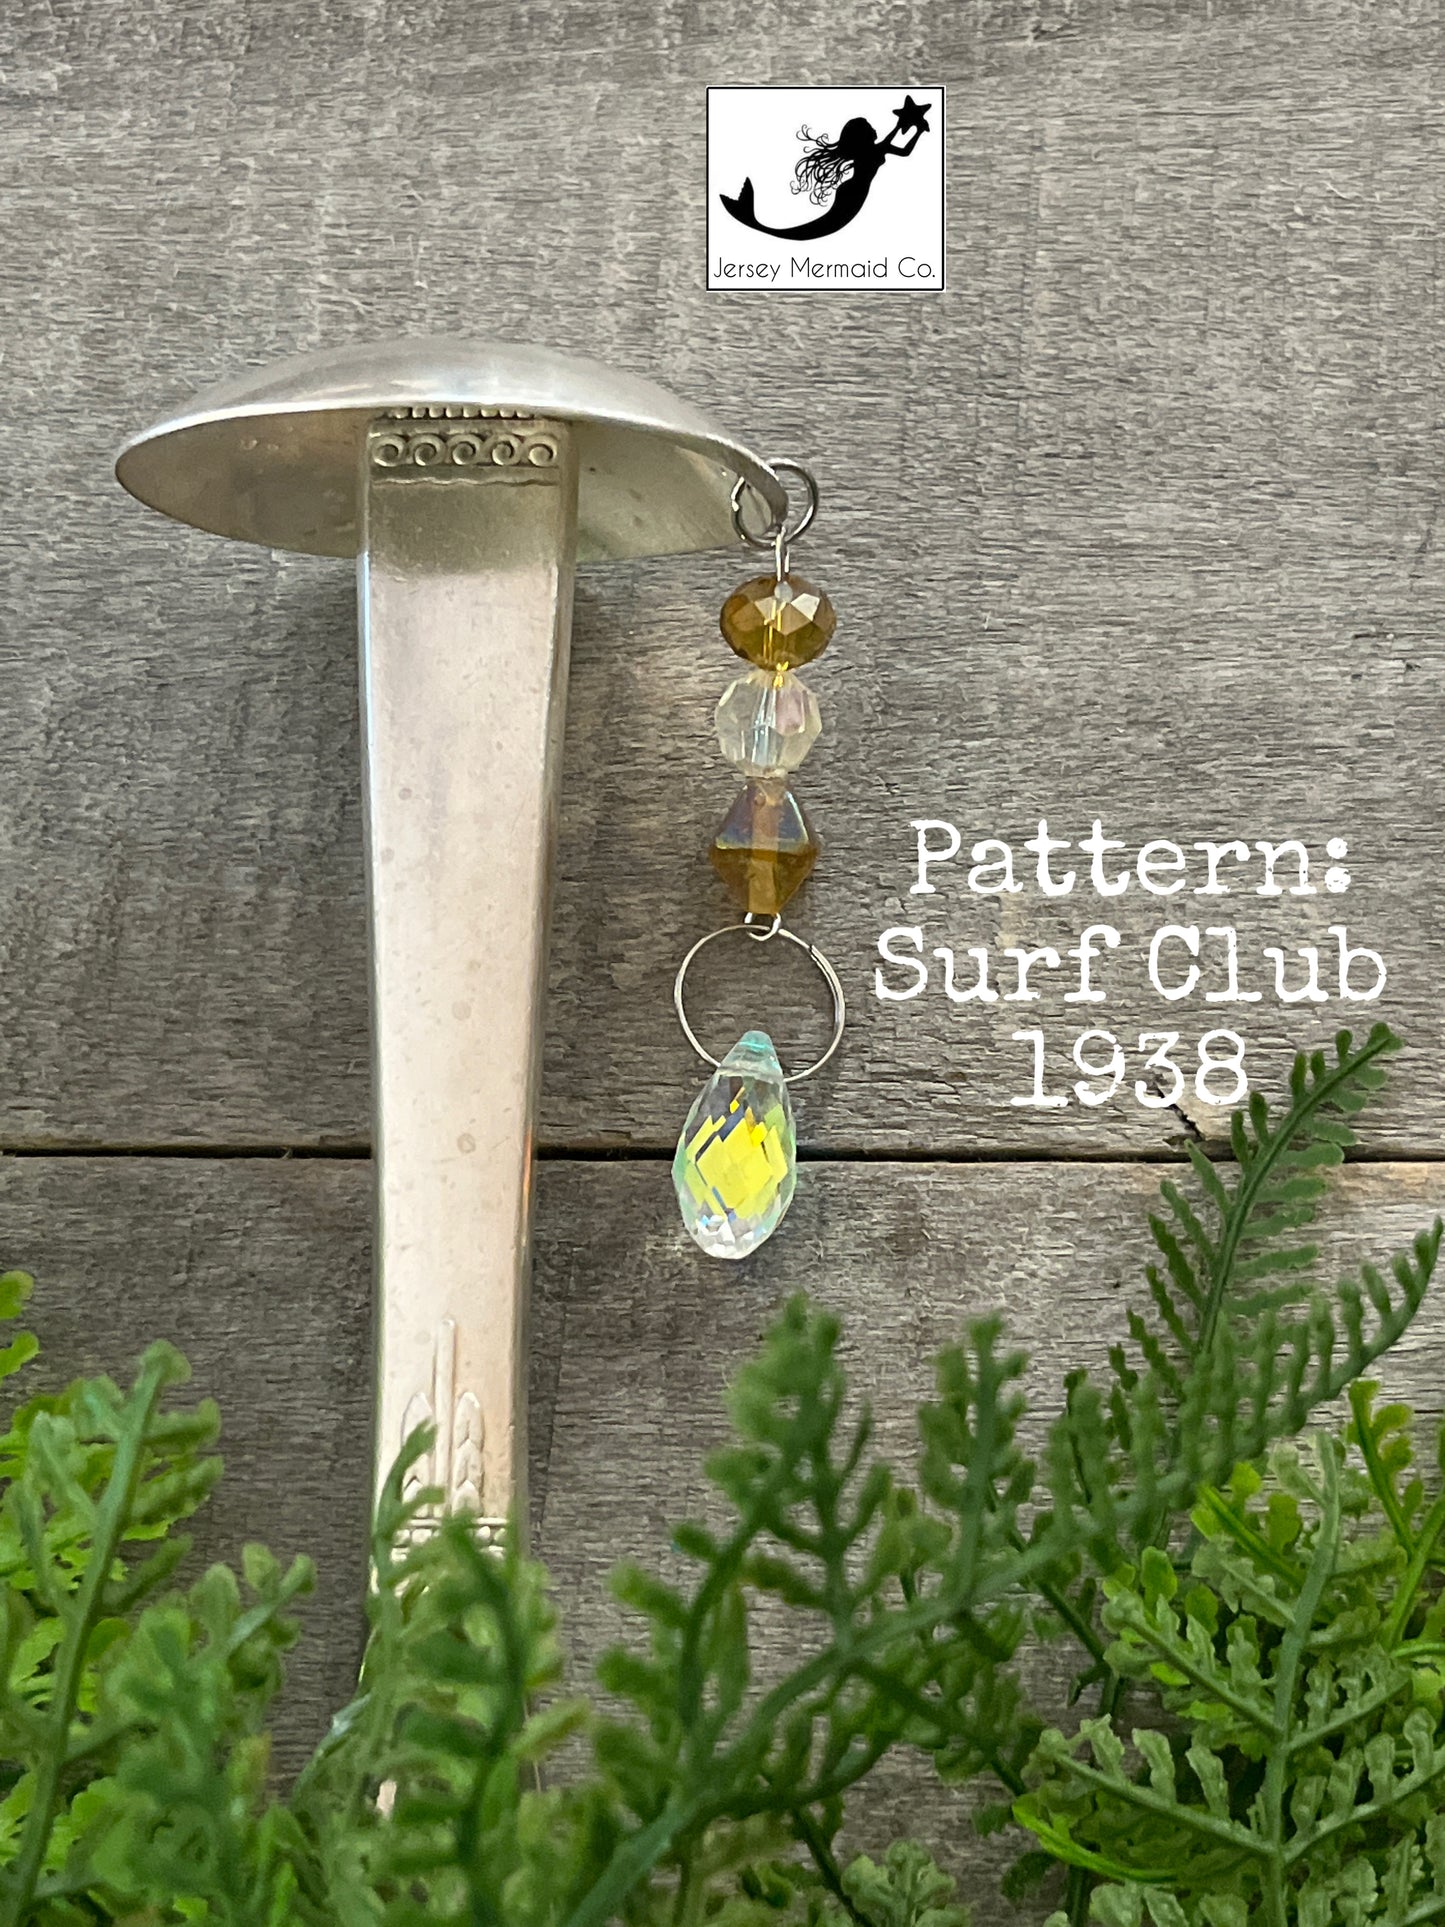 Mushroom Garden Bling- pattern: Surf Club, vintage 1938